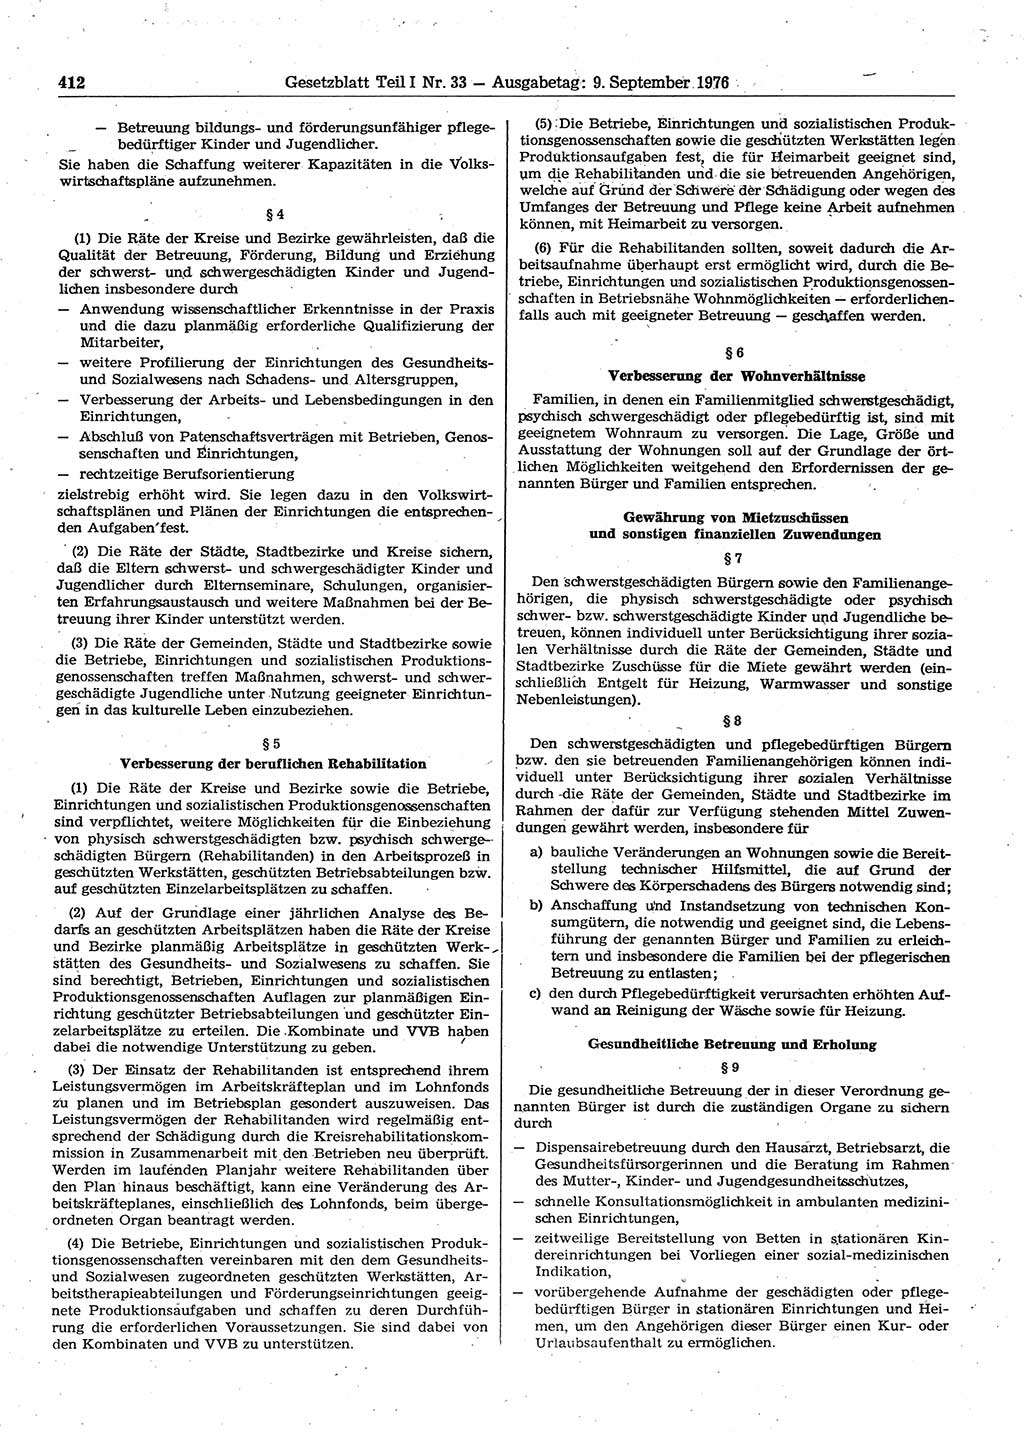 Gesetzblatt (GBl.) der Deutschen Demokratischen Republik (DDR) Teil Ⅰ 1976, Seite 412 (GBl. DDR Ⅰ 1976, S. 412)